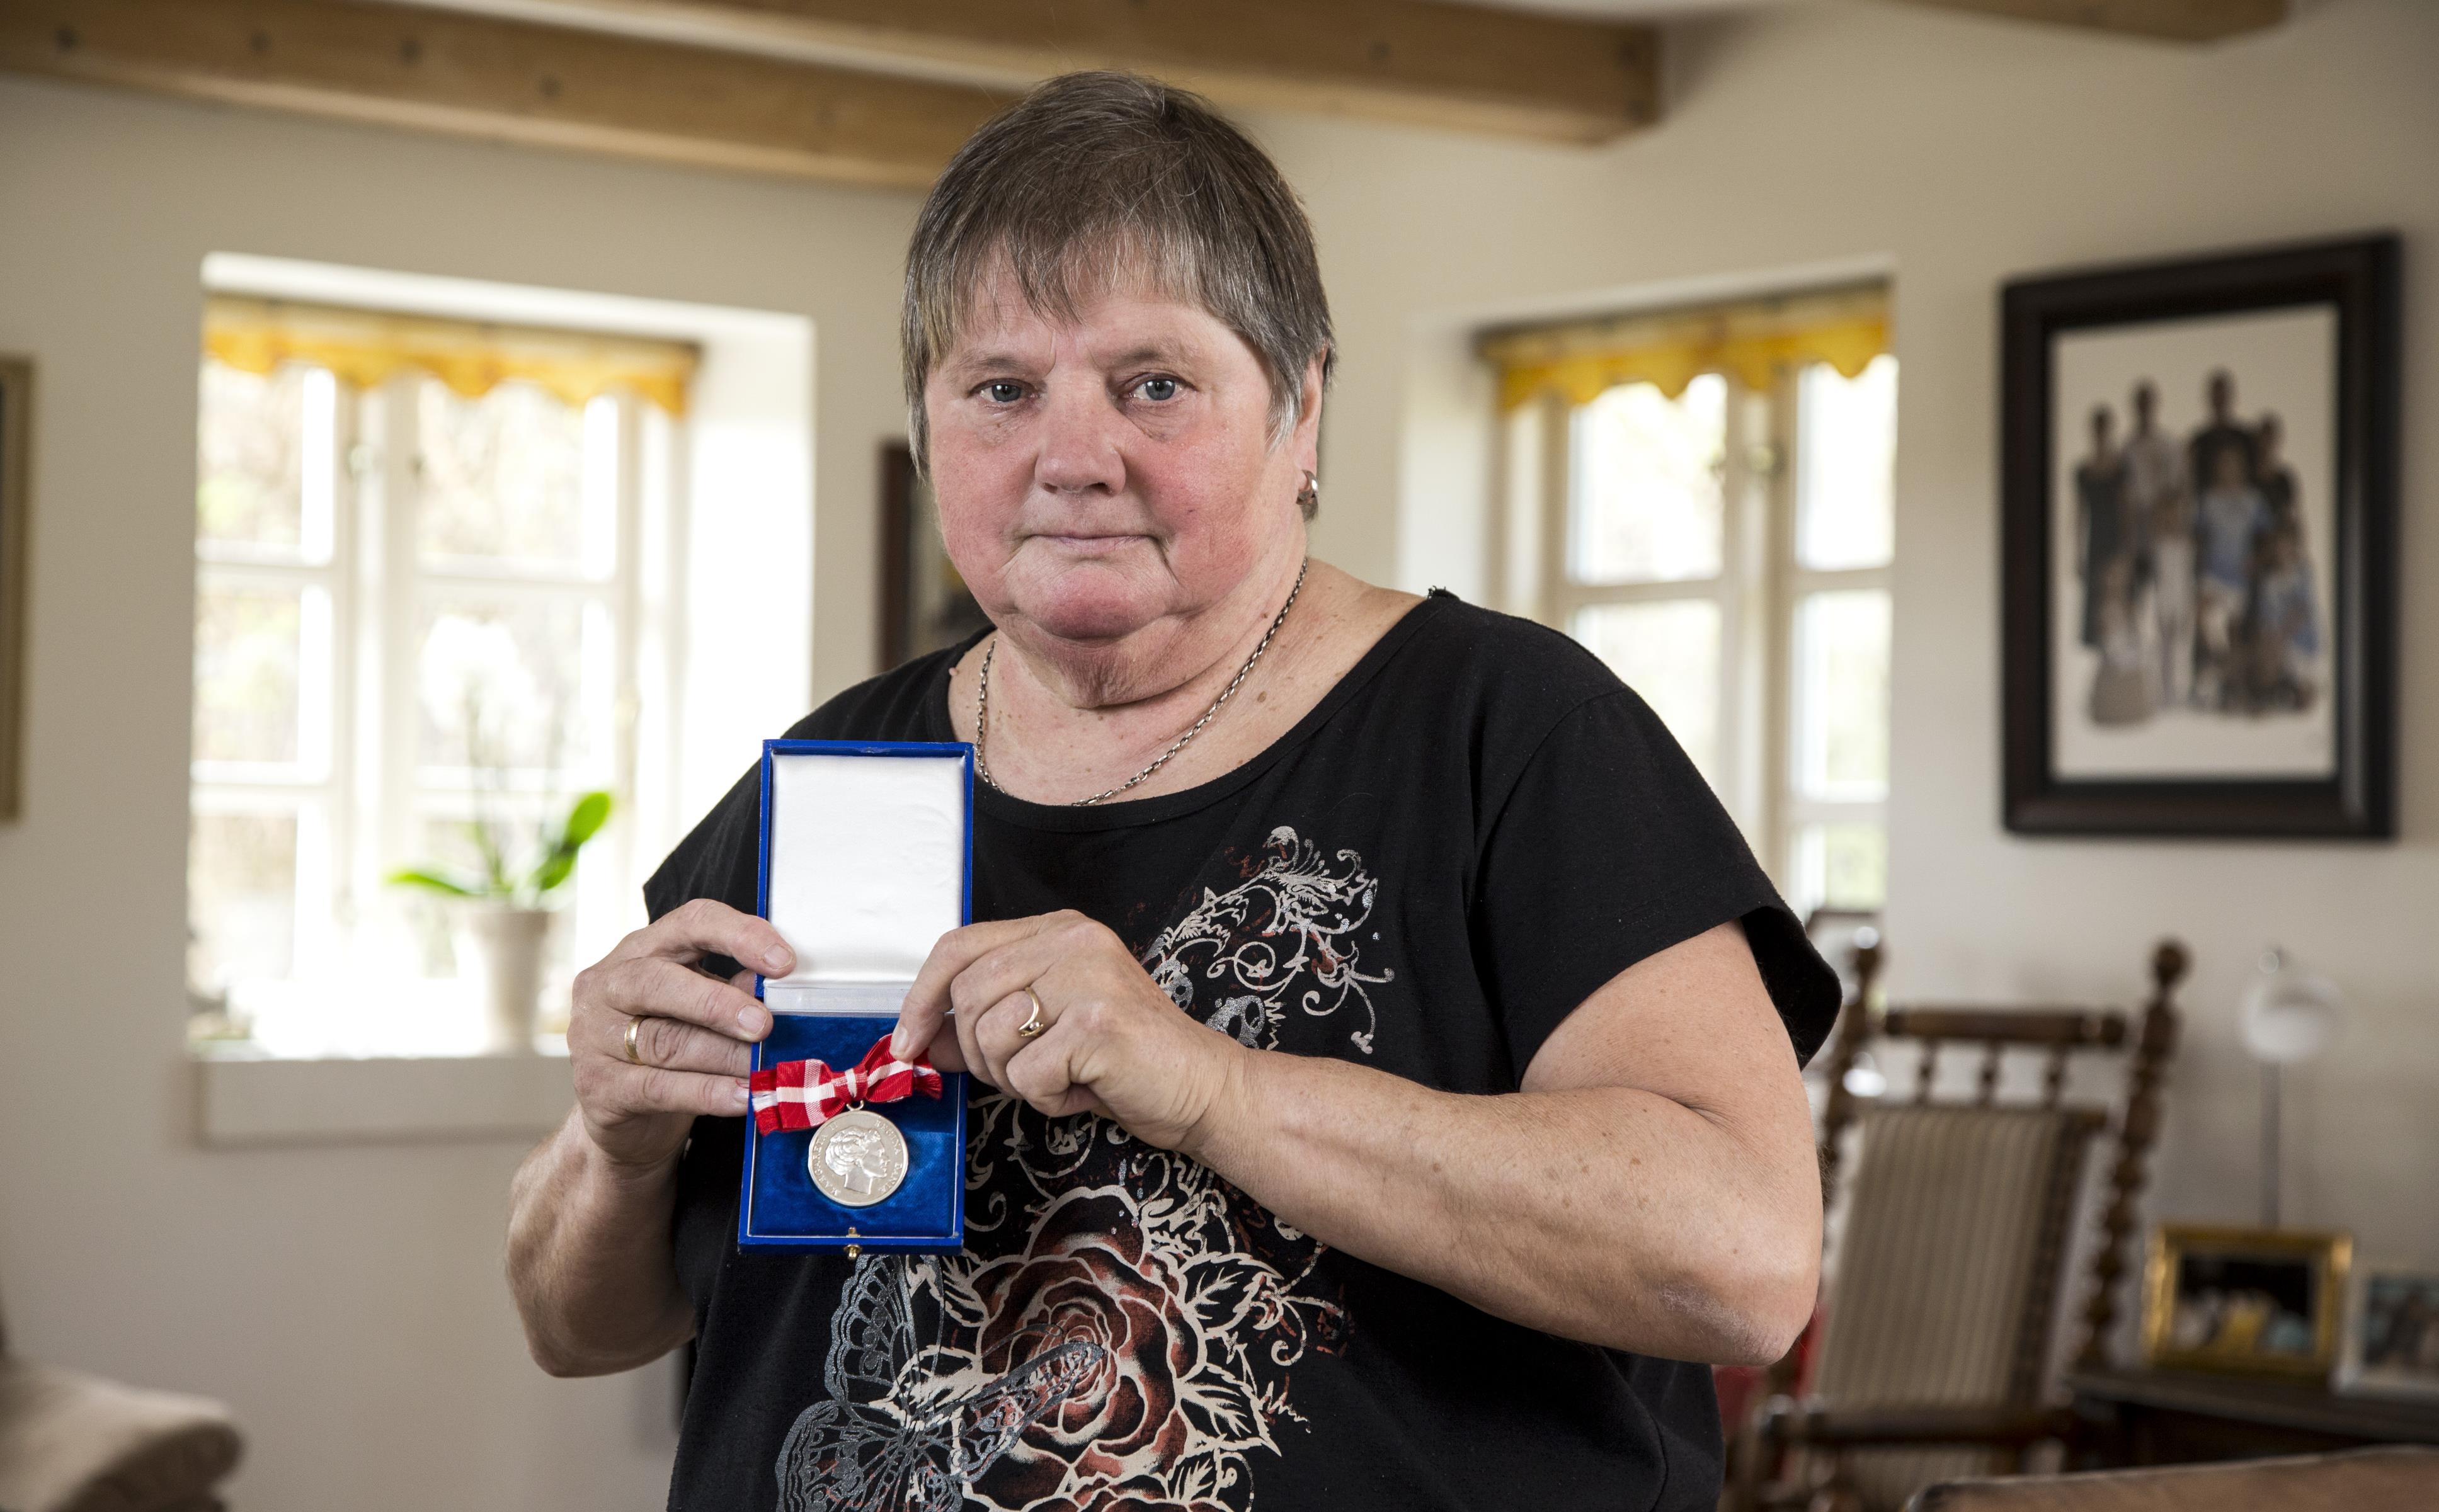 Mary fik medalje en fyreseddel fra kommunen Fagbladet FOA